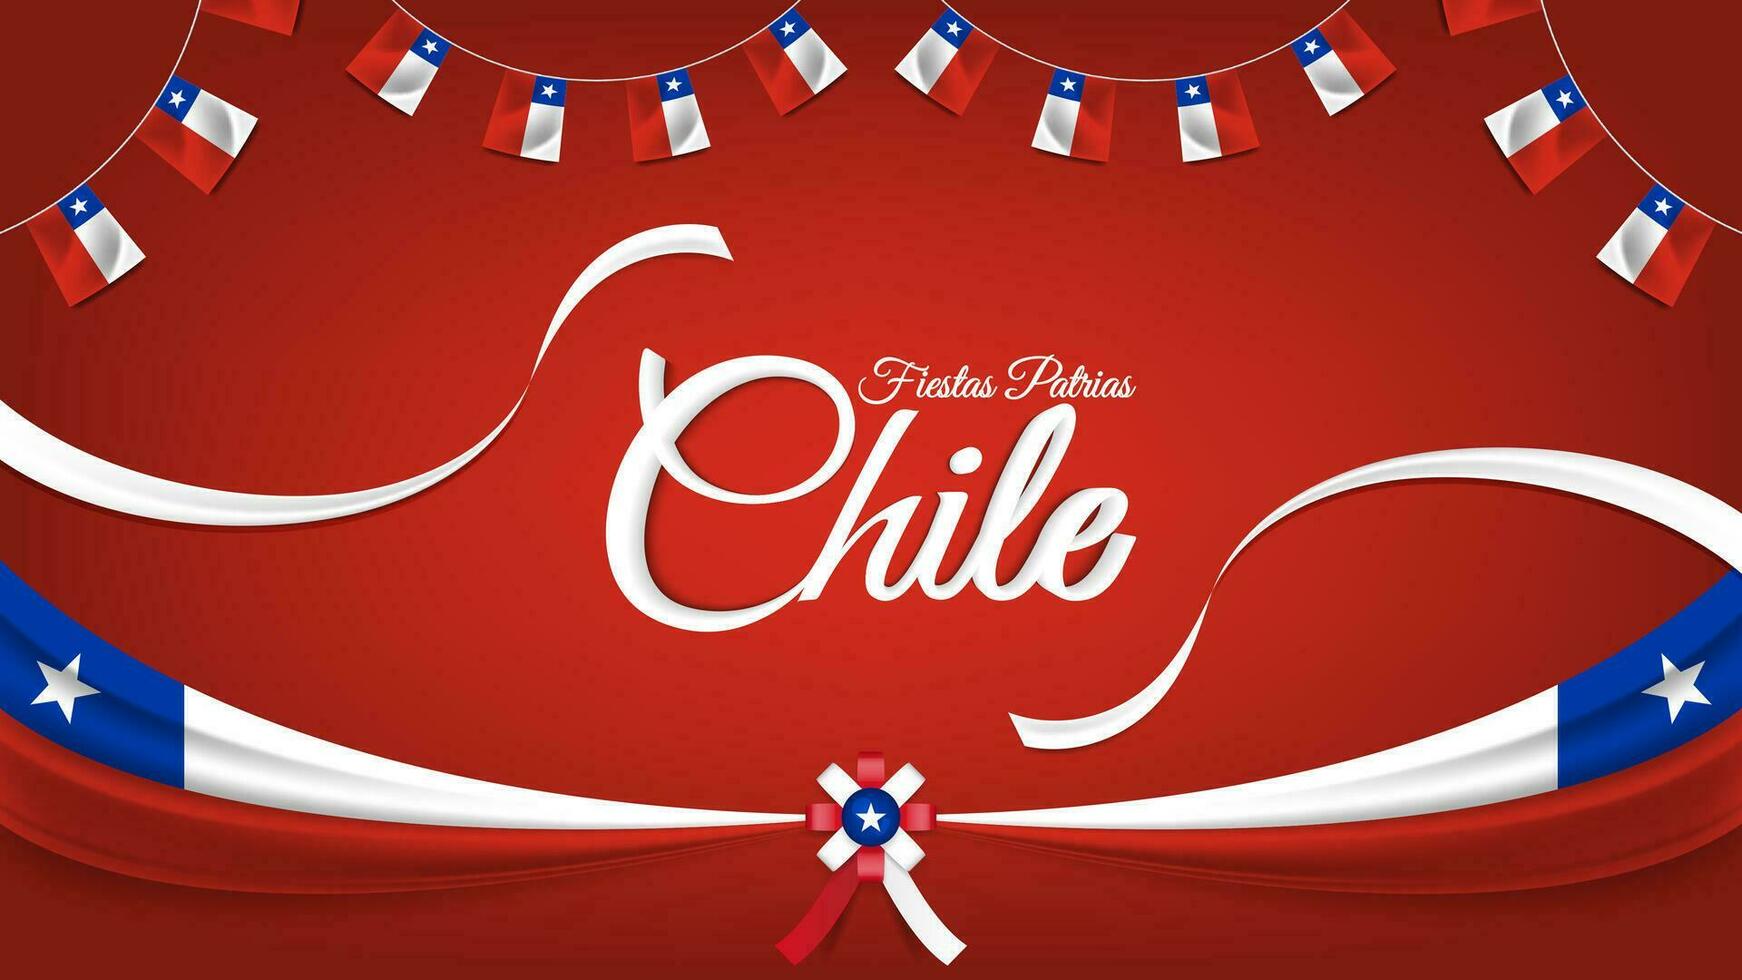 Chile nacional feriado ou patriótico dia celebração cumprimento com fitas, bandeiras, e espanhol frase texto festas patrias Chile vetor